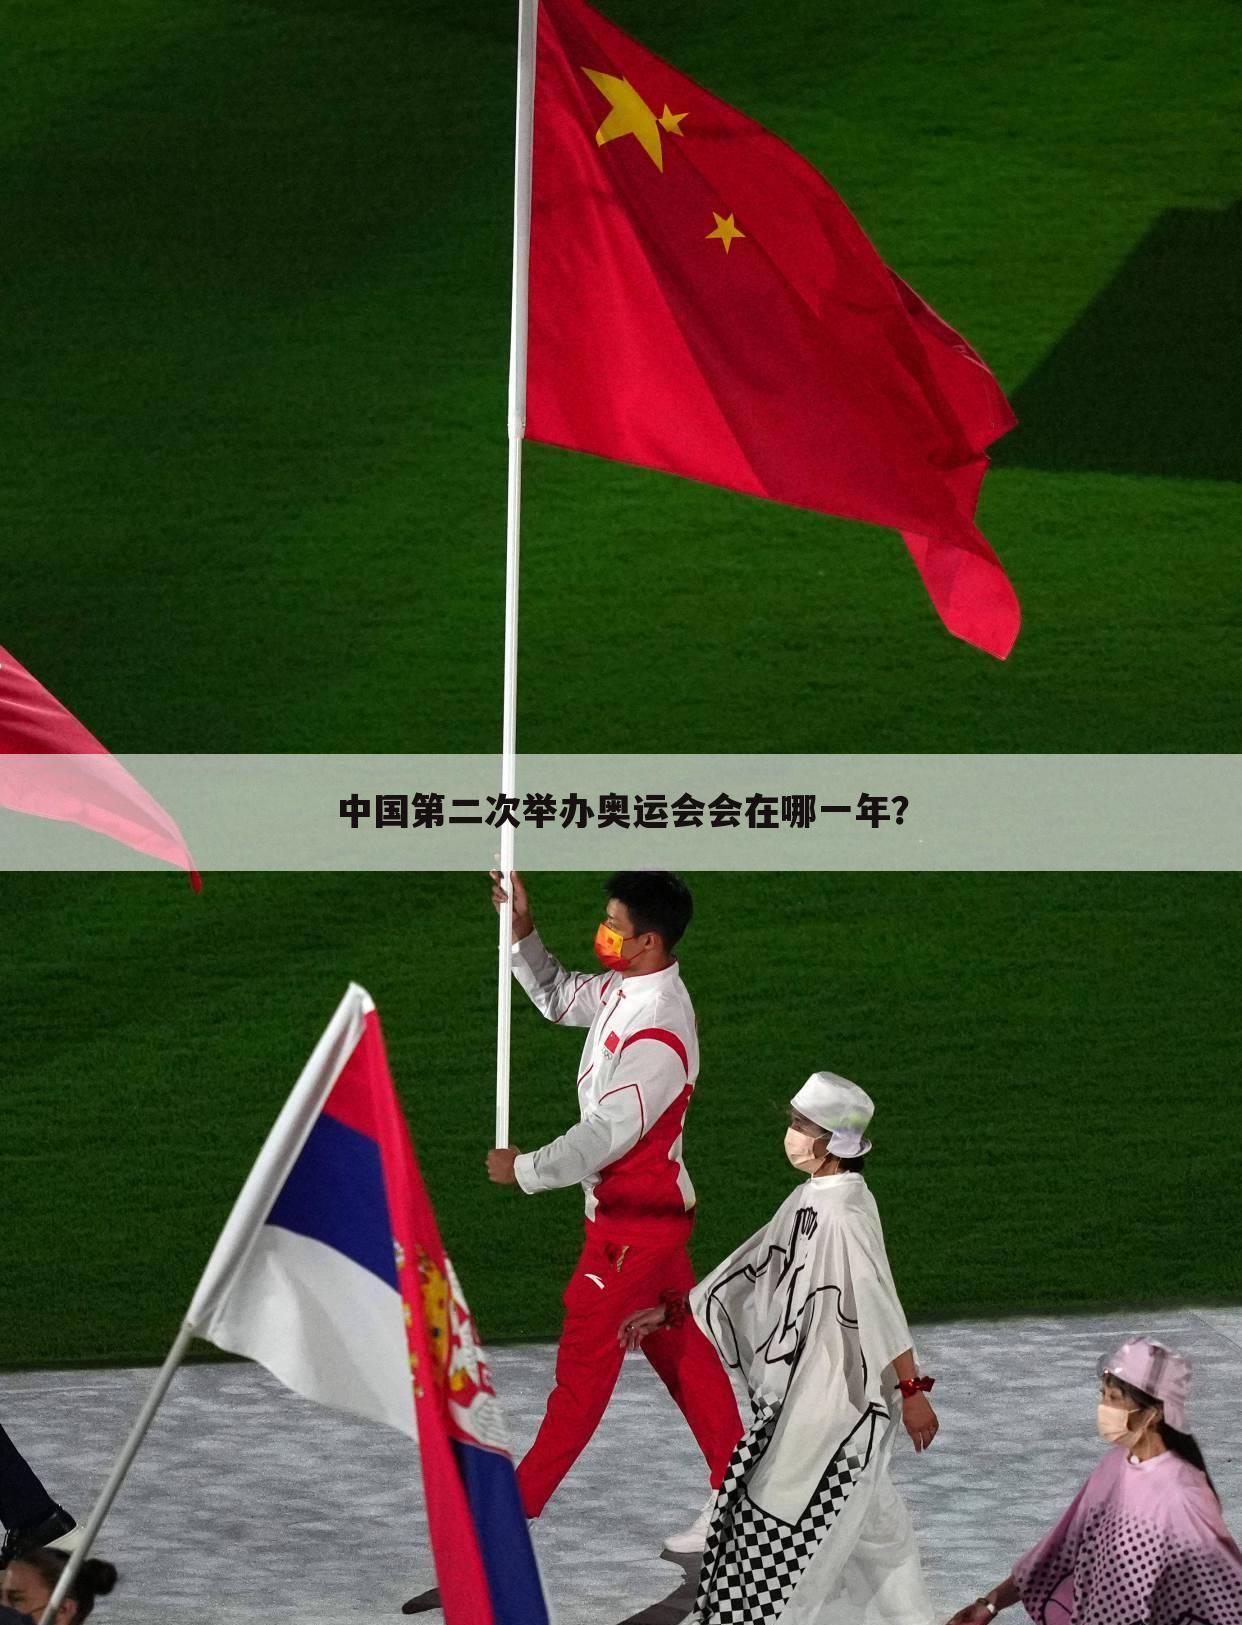 〈奥运赛事〉中国第二次举办奥运赛事